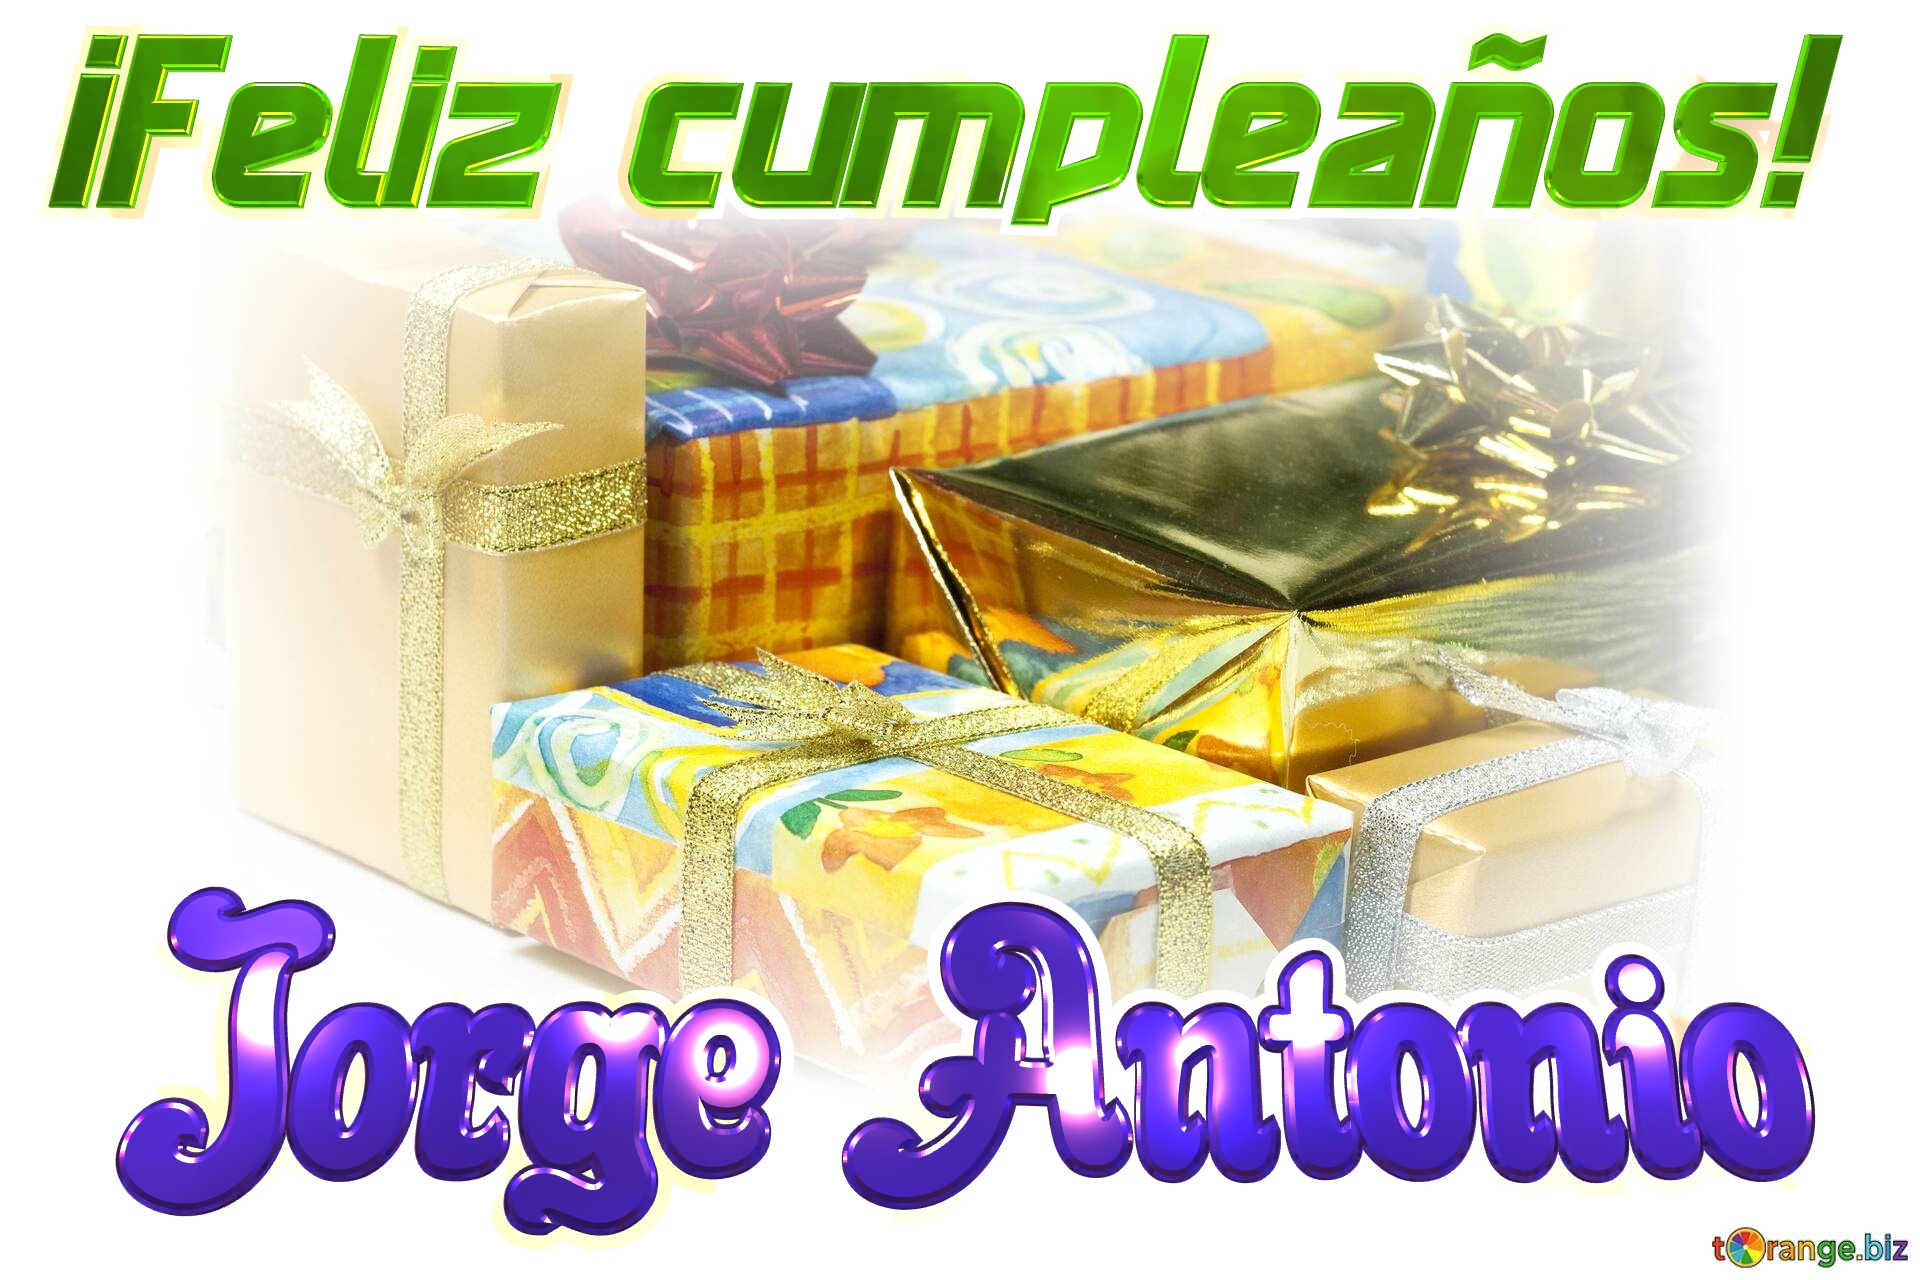 ¡Feliz cumpleaños! Jorge Antonio  cajas de regalo №0